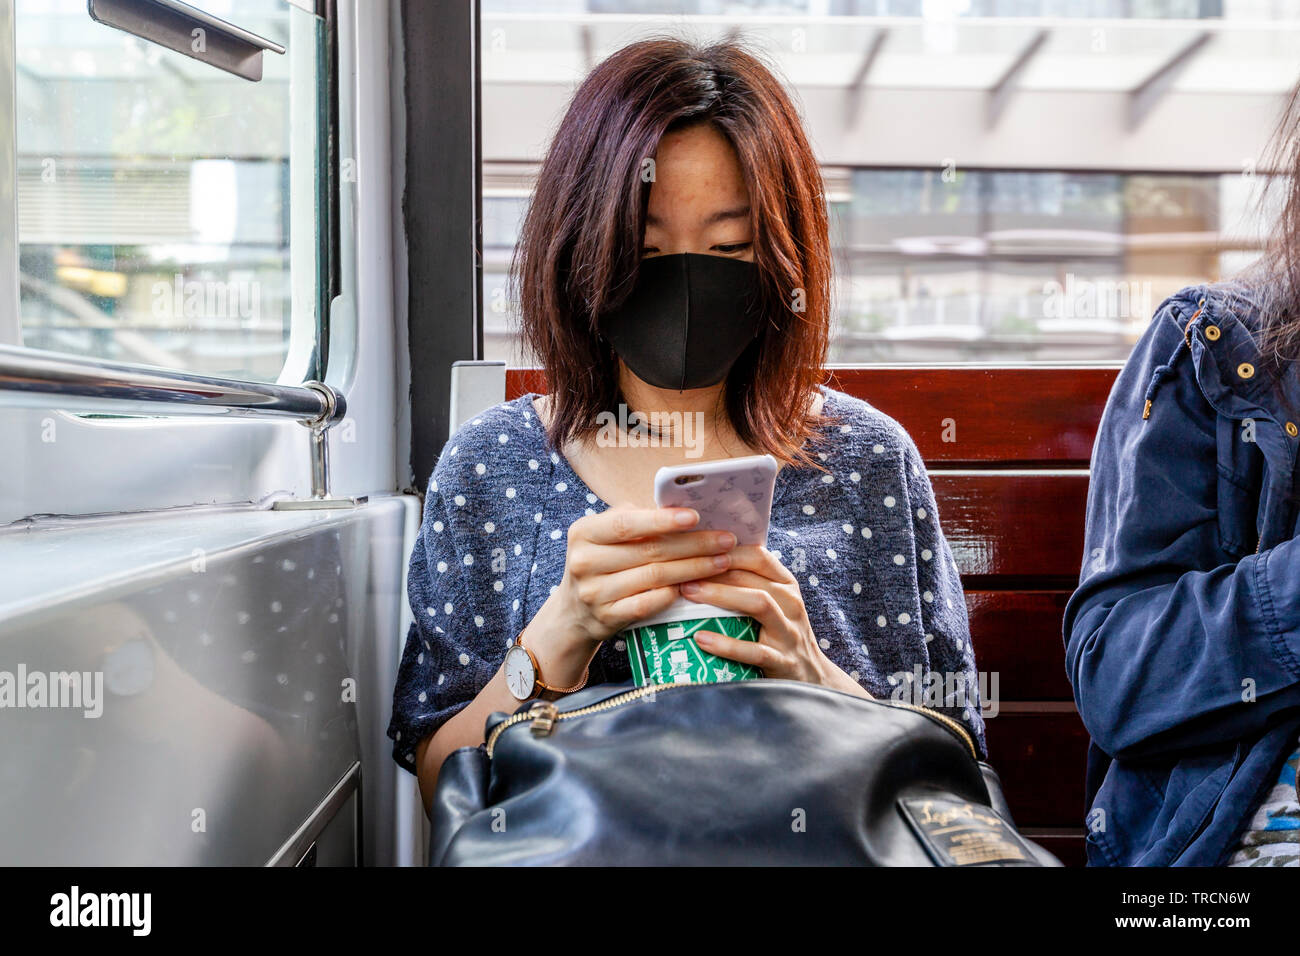 Una donna che indossa una maschera facciale seduto su un tram guardando il suo smartphone, Hong Kong, Cina Foto Stock